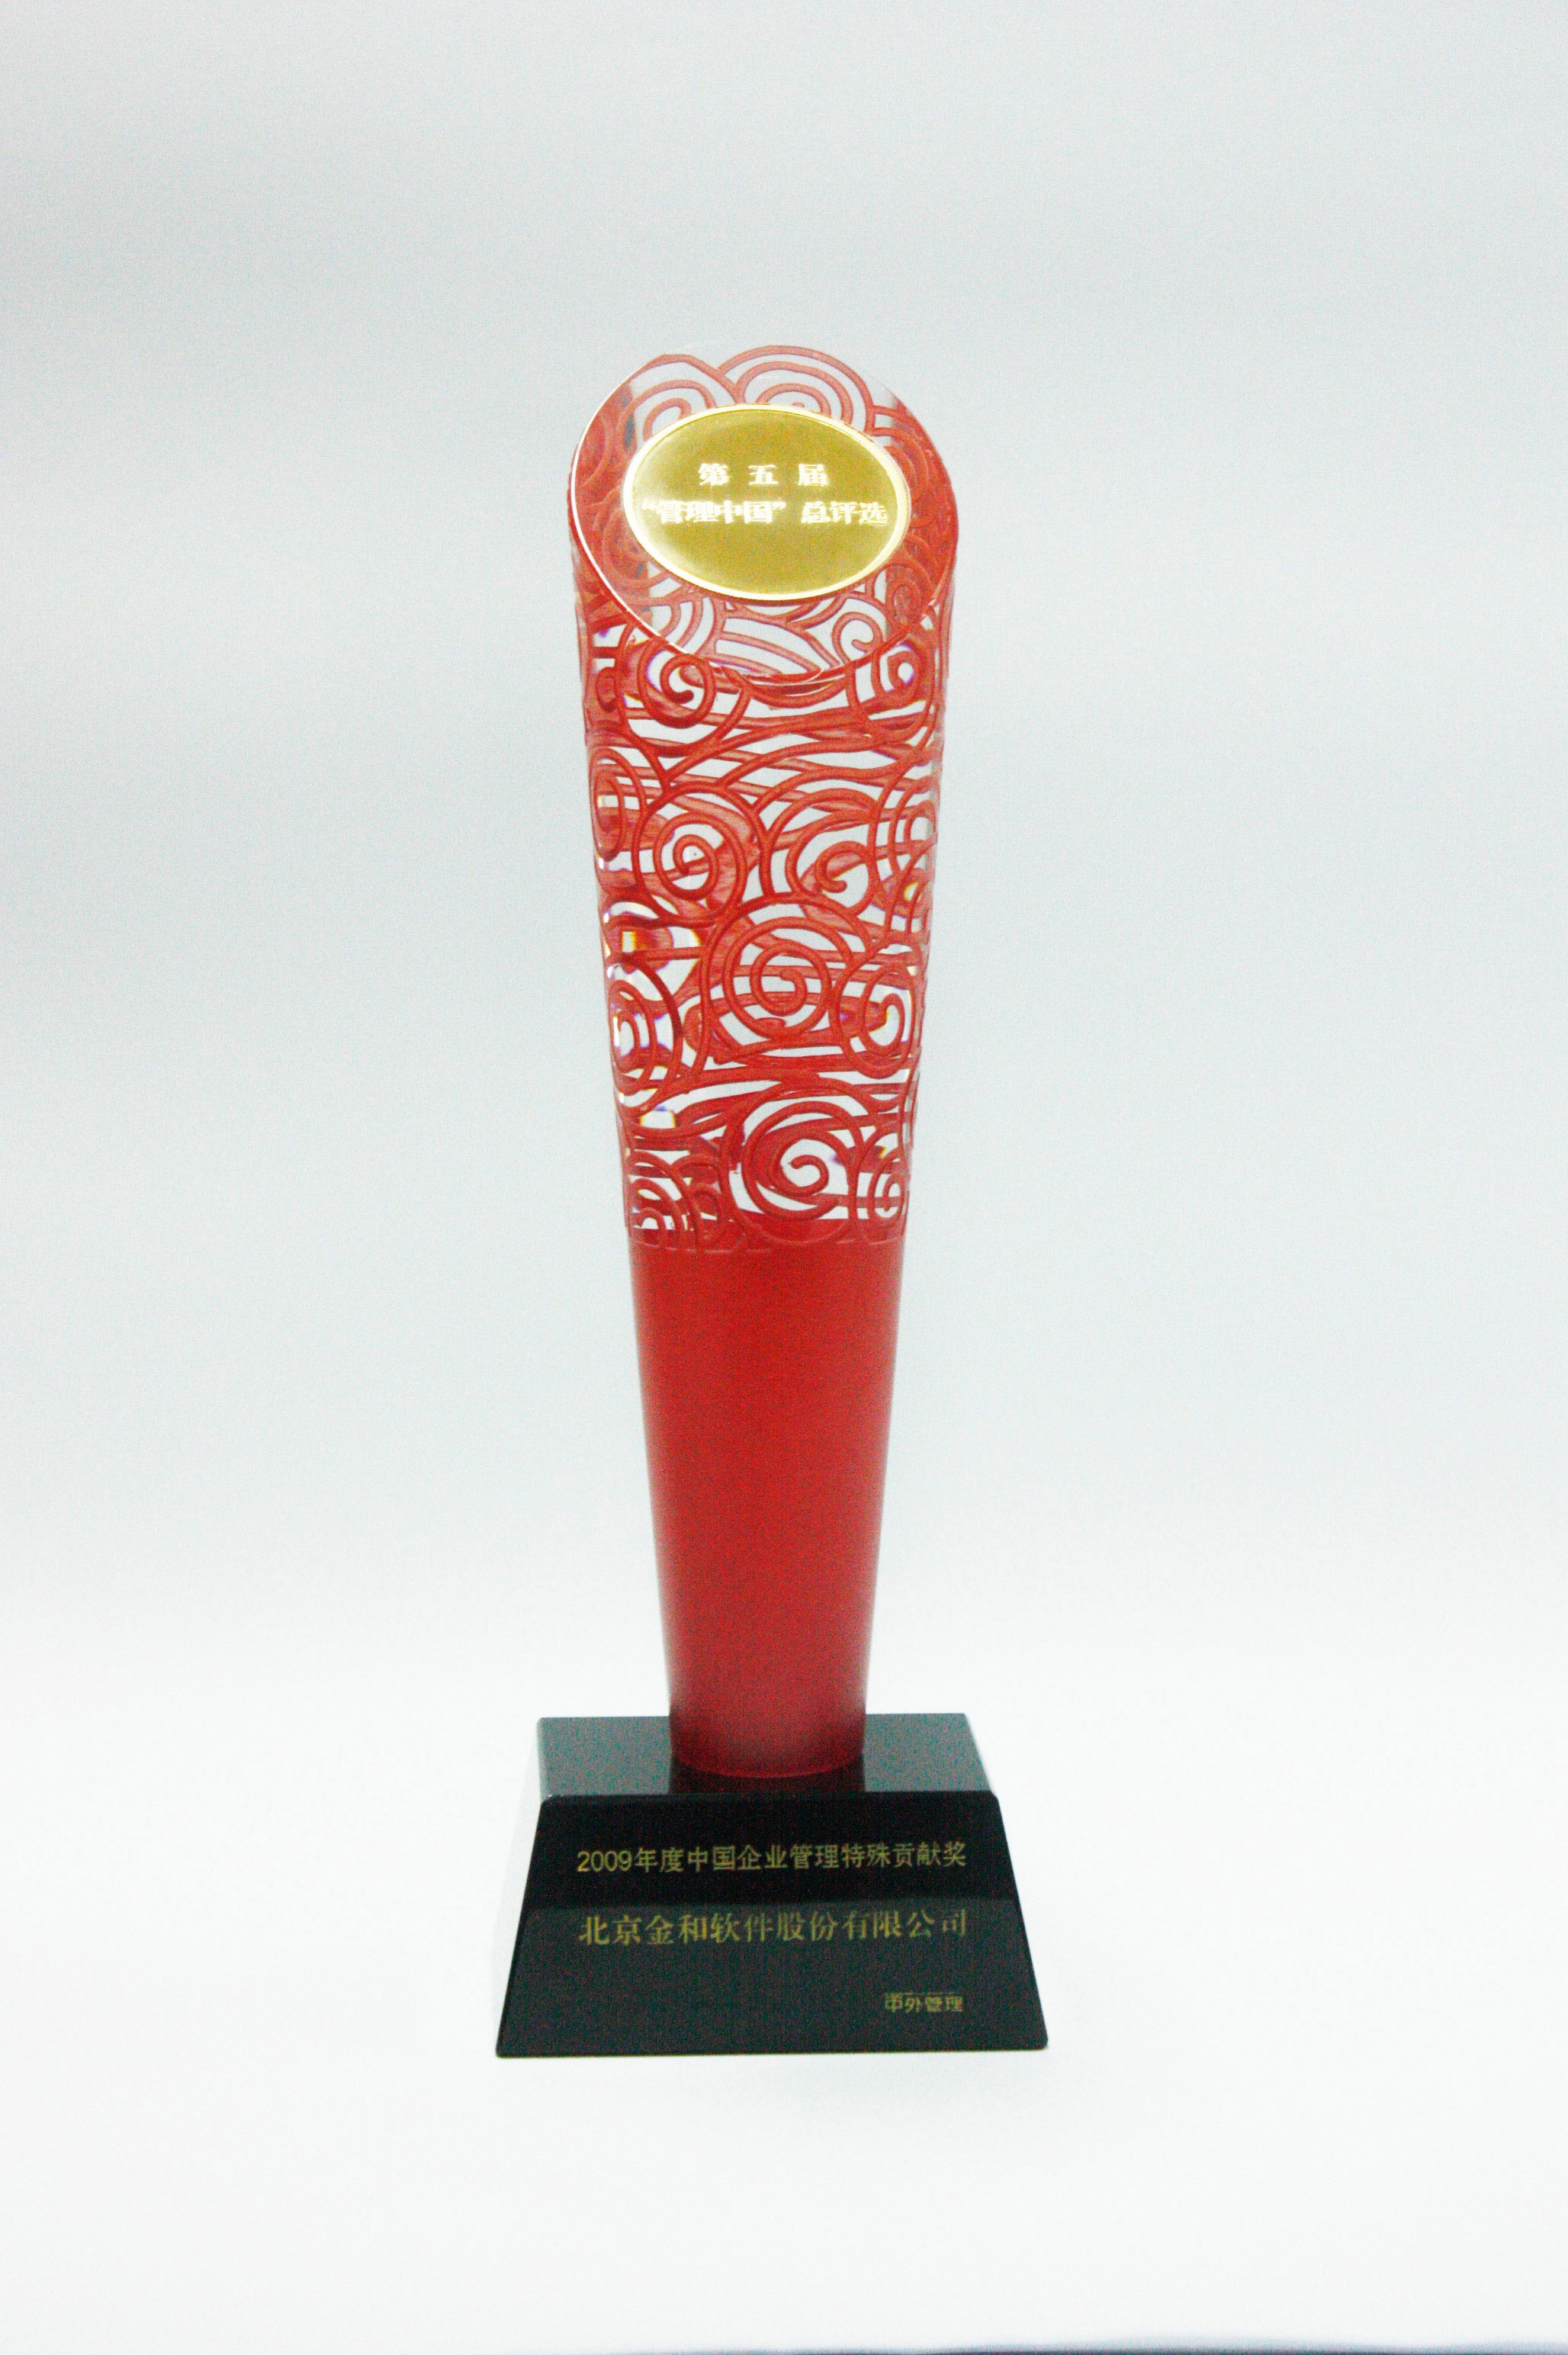 2009/5/1中国企业管理特殊贡献奖